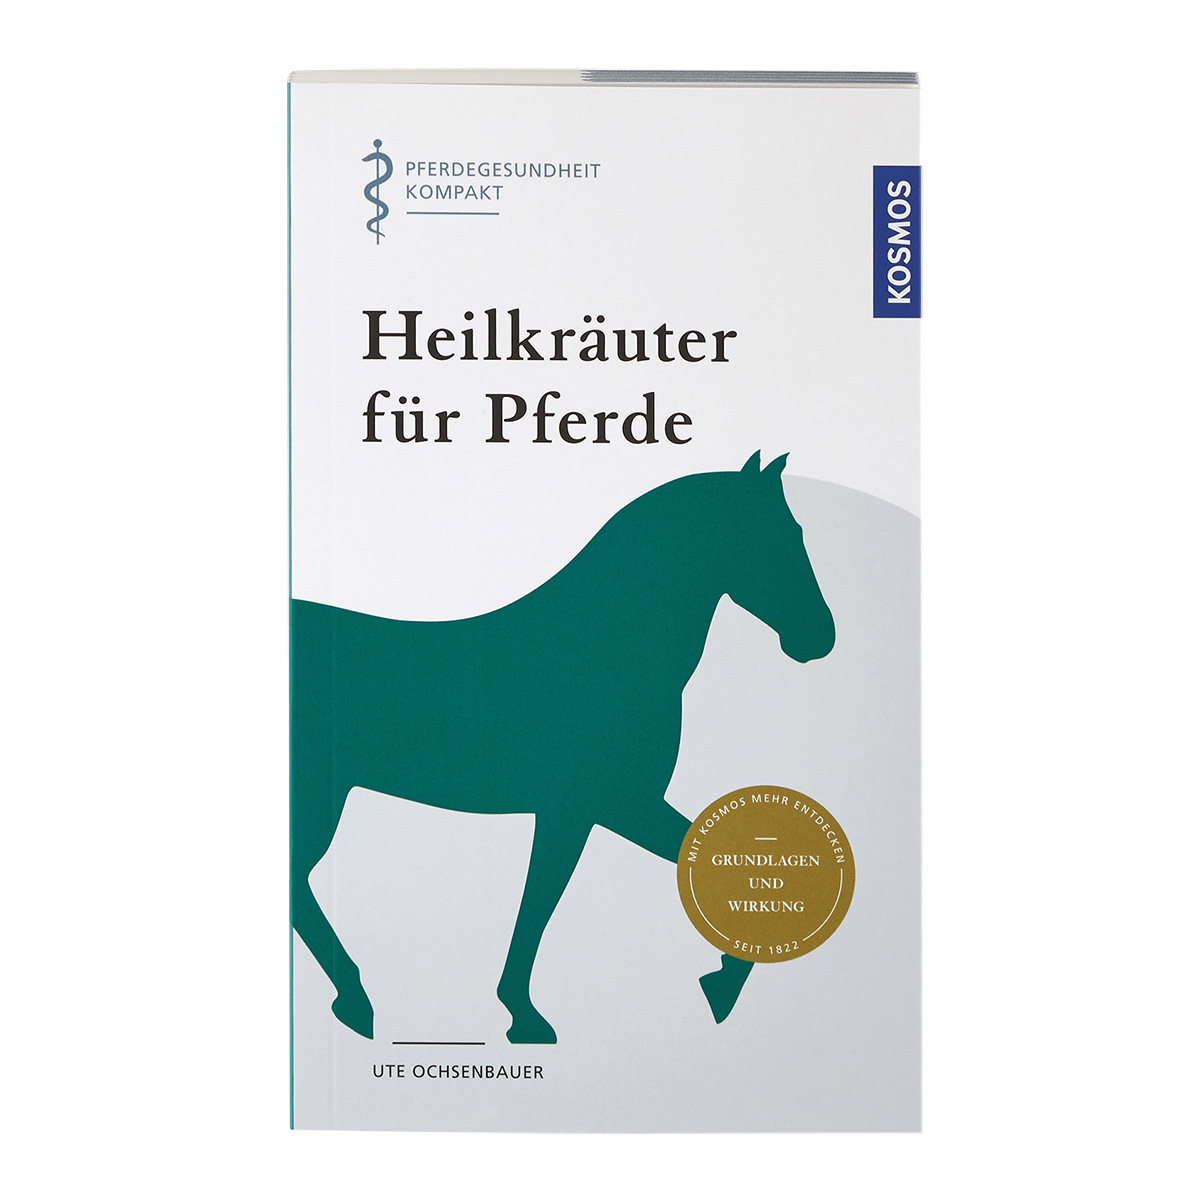 Buch: "Heilkräuter für Pferde", Ute Ochsenbauer, ISBN 978-3-440-16365-8